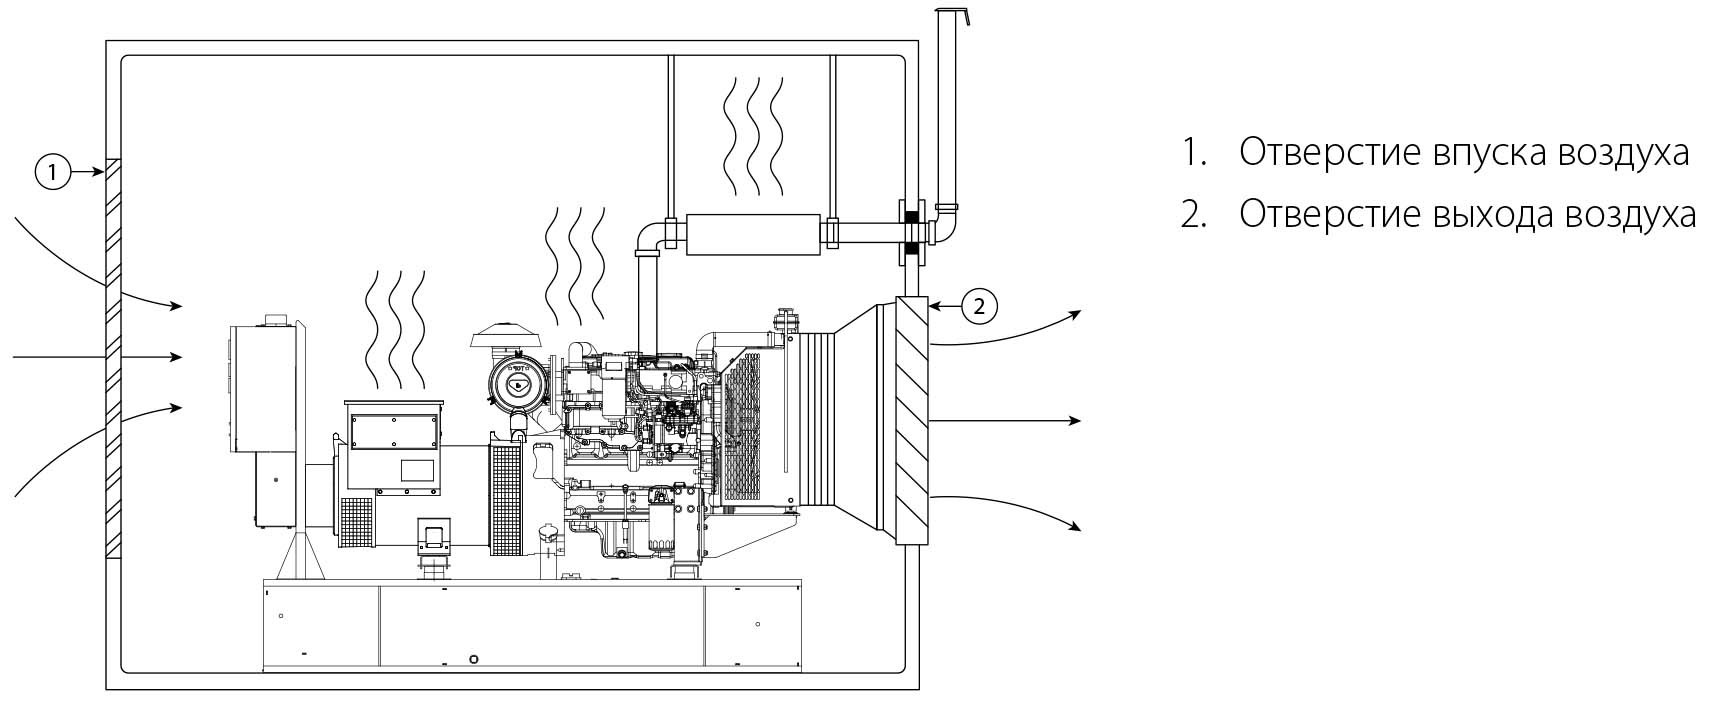 Дизель генератор - приклад установки в приміщенні